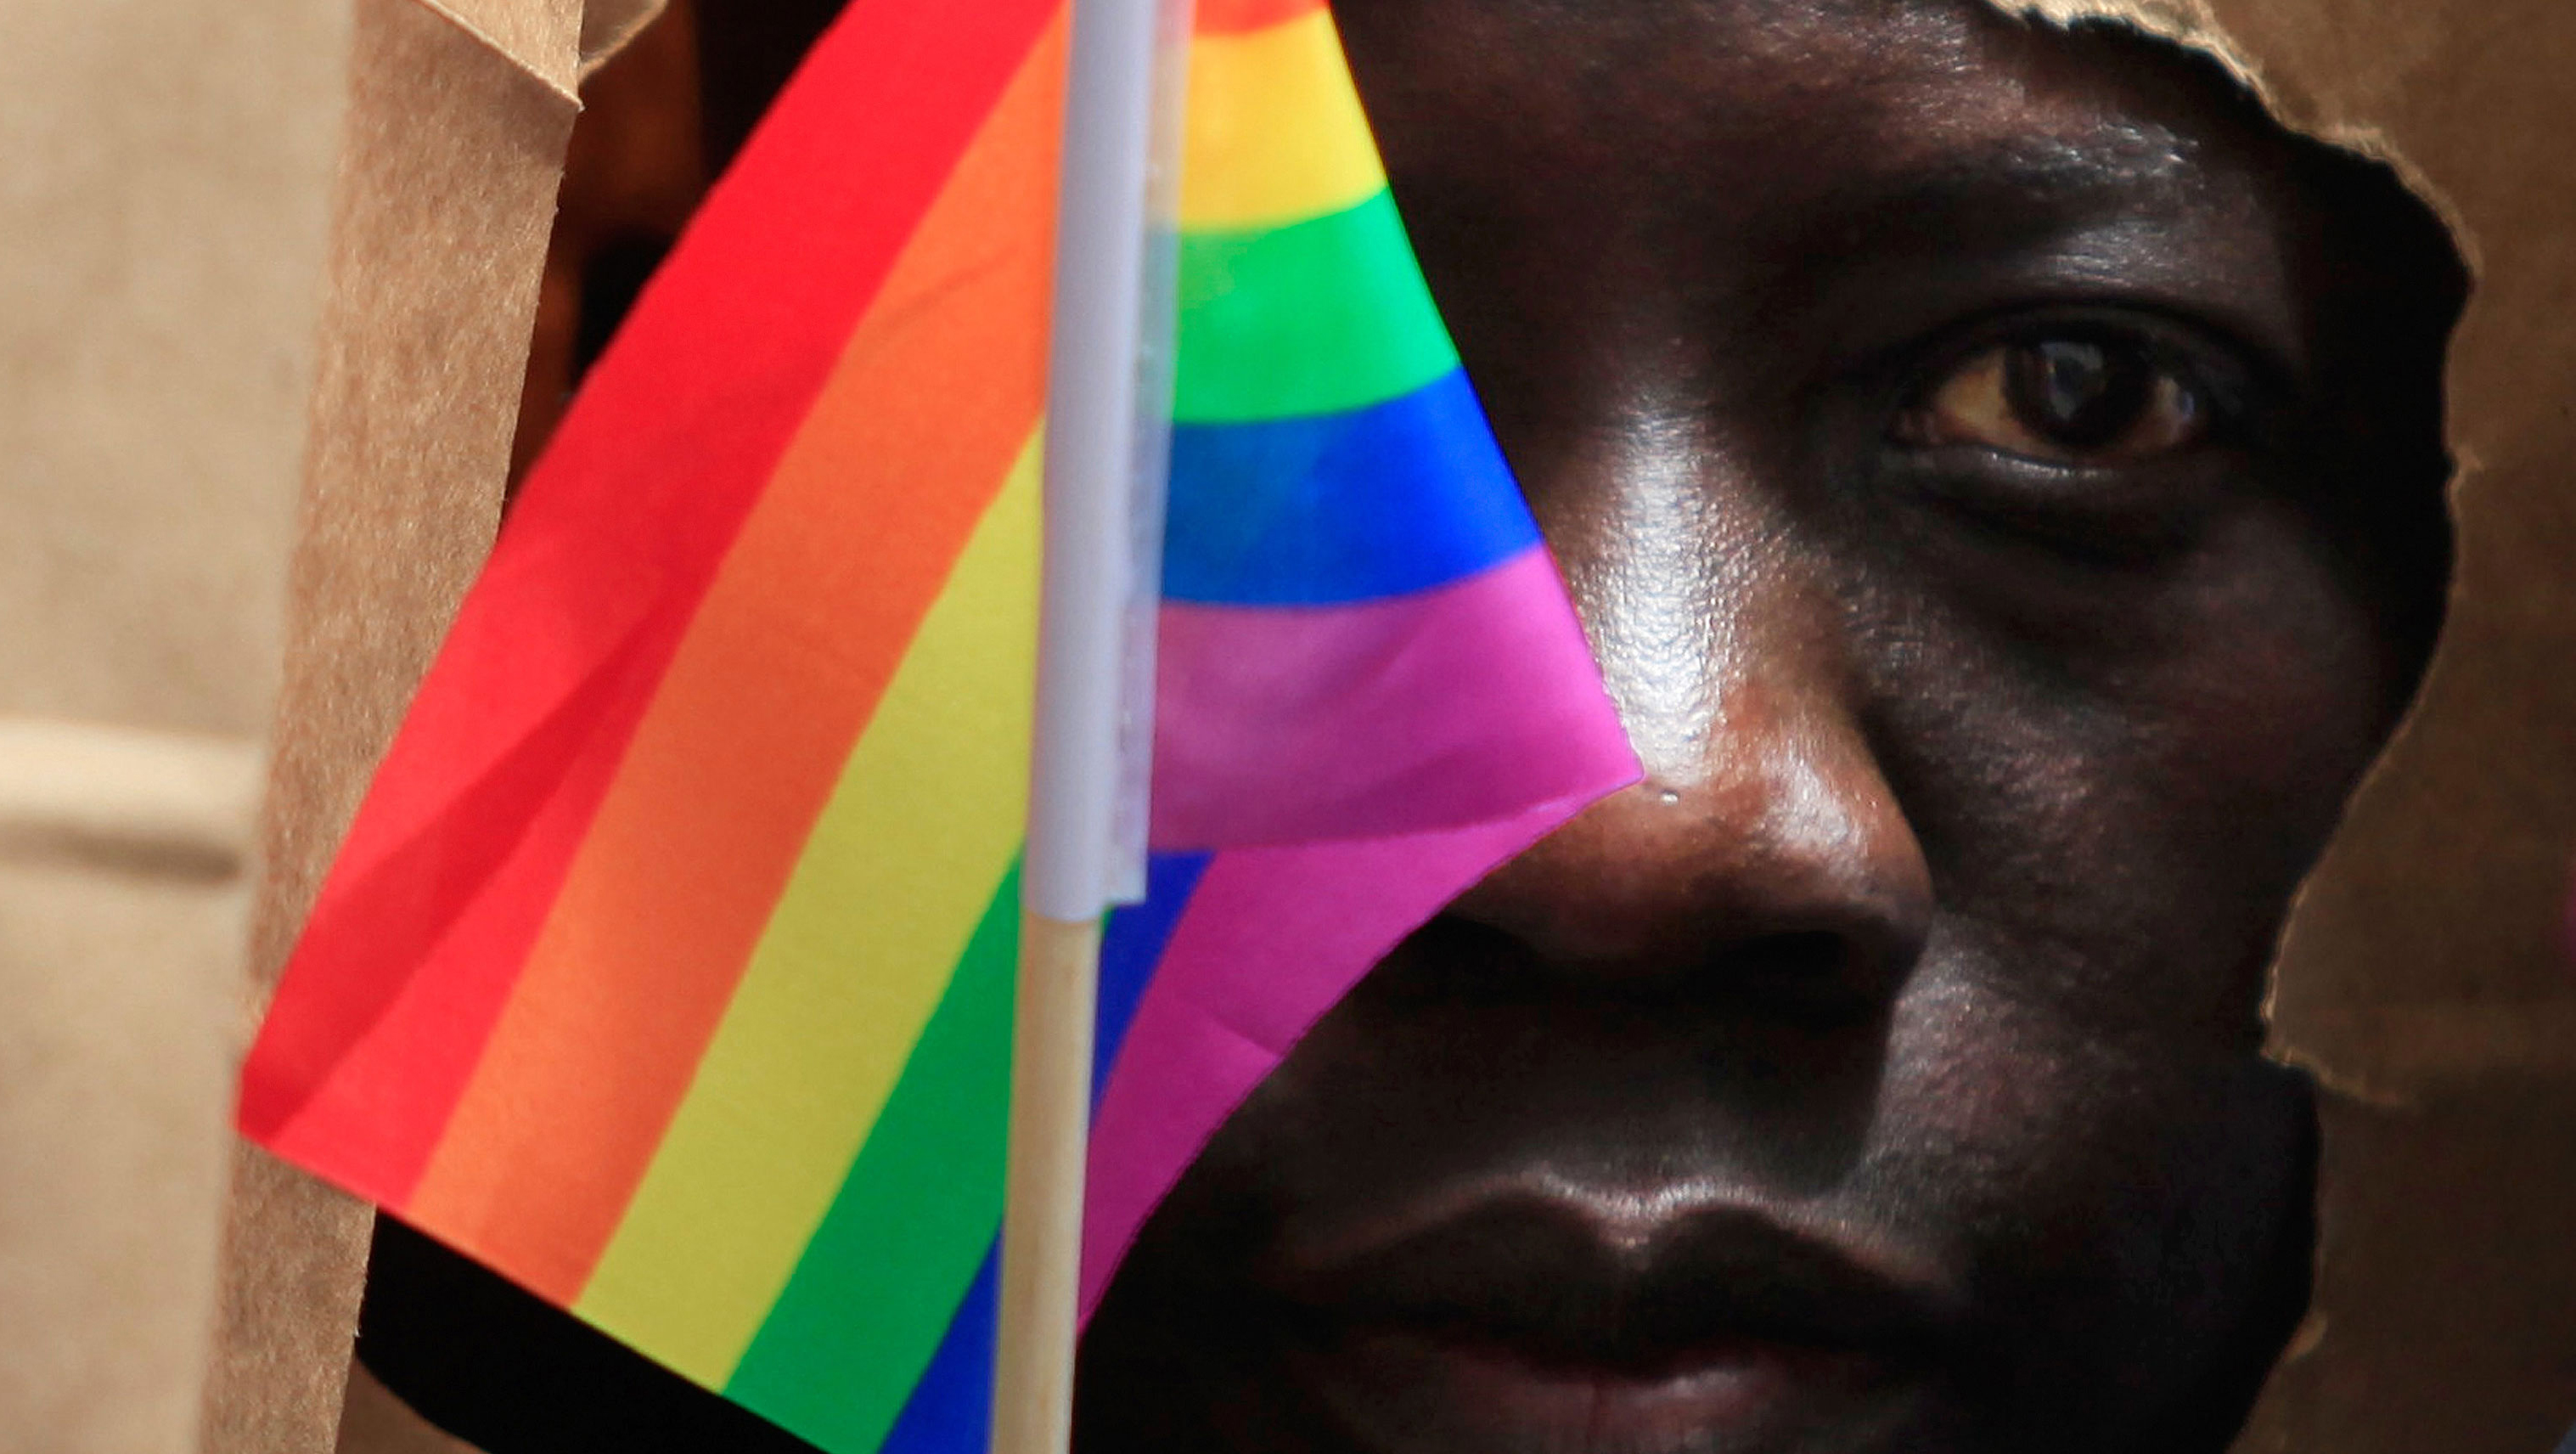 La ley estipulaba condena de cadena perpetua para los homosexuales que persistan en sus prácticas. (Foto: primiciadiario.com)